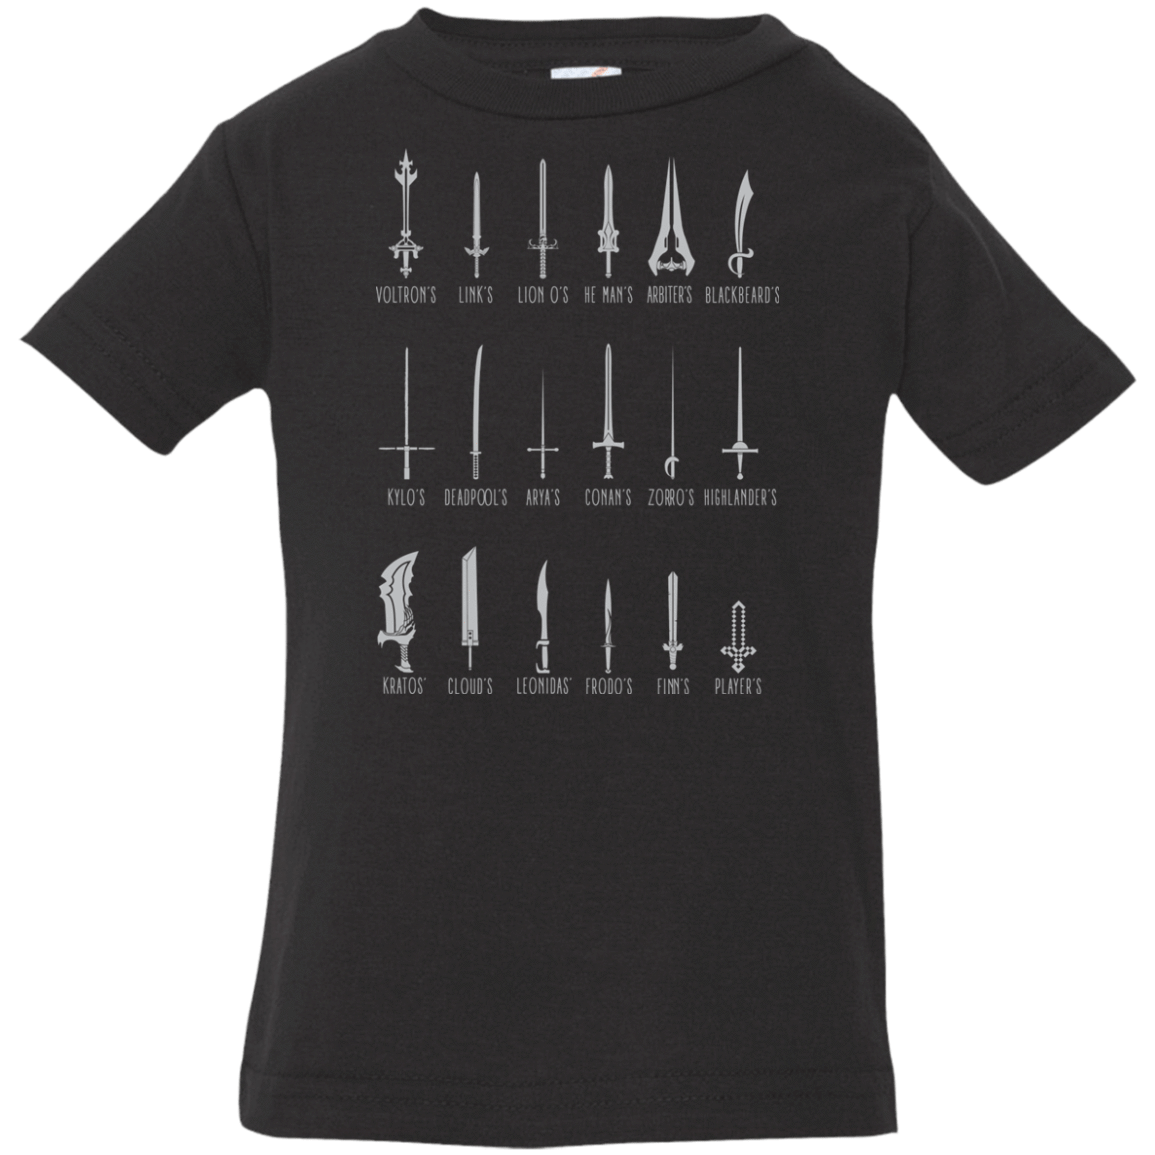 T-Shirts Black / 6 Months POPULAR SWORDS Infant Premium T-Shirt